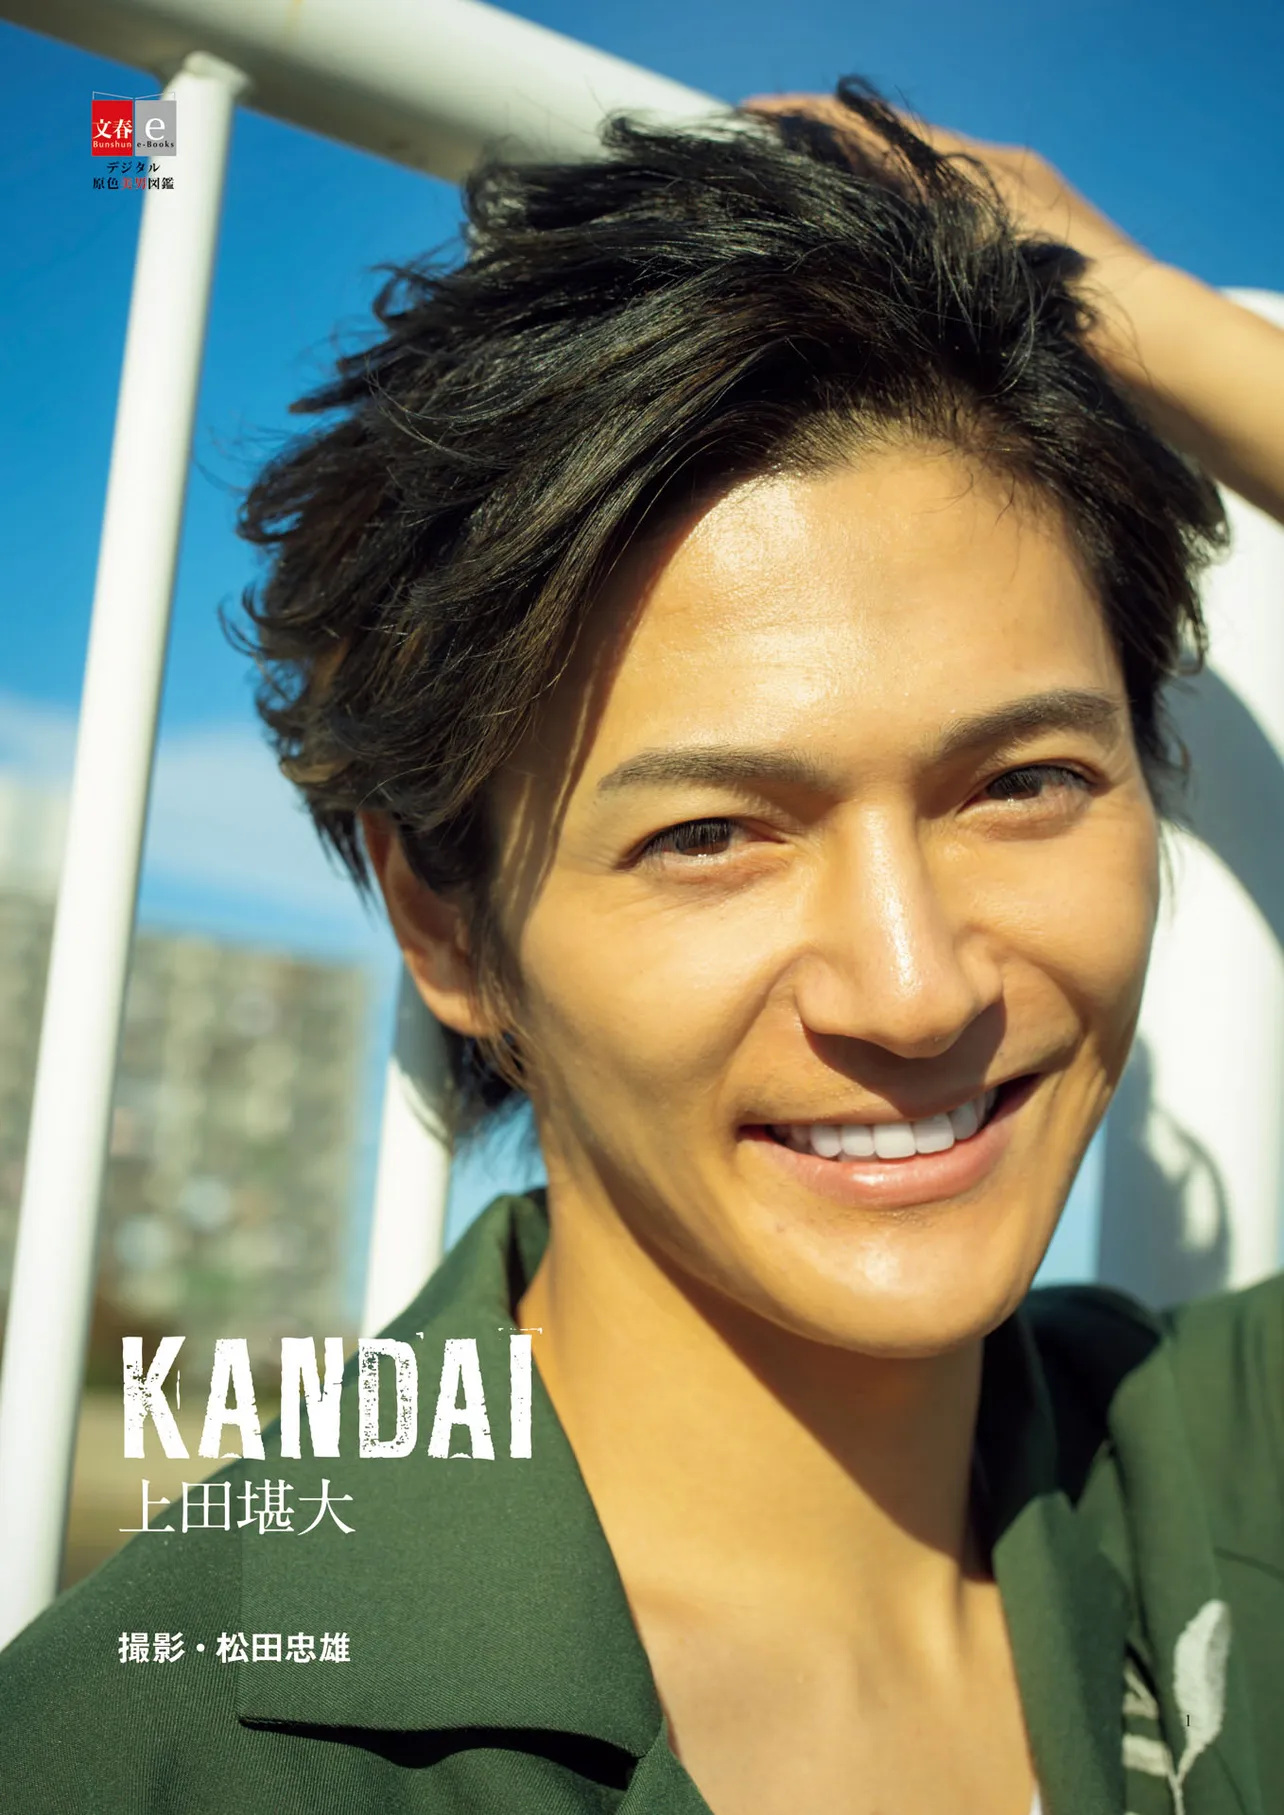 上田堪大のデジタル写真集「KANDAI」が2月14日にリリースされた